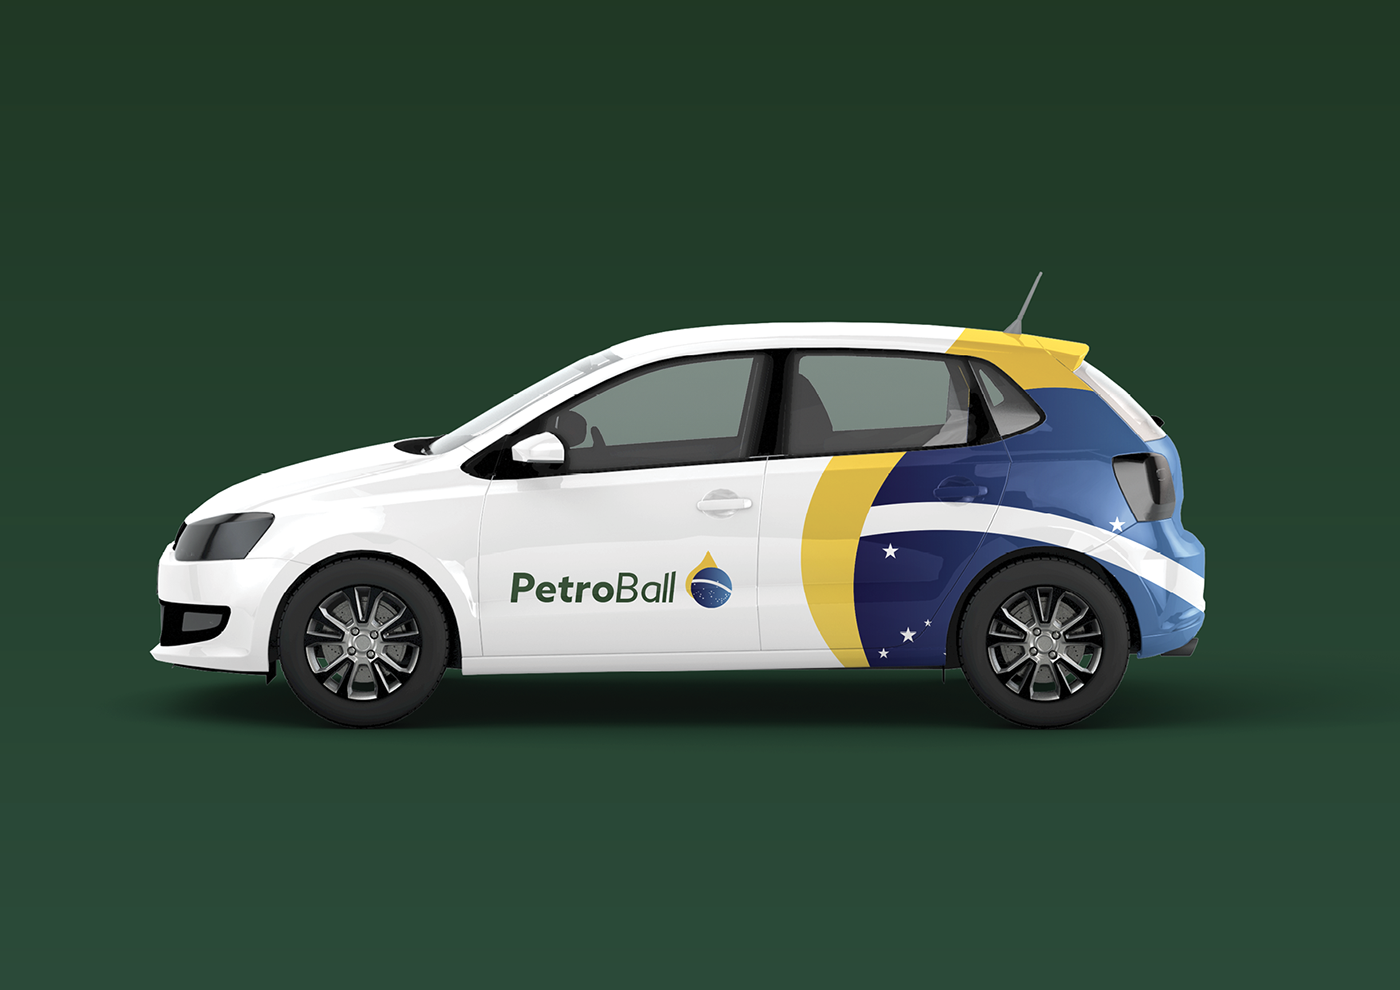 energia petroleo petrobras combustível Ribeião Preto são paulo Brasil nacional branding  marca